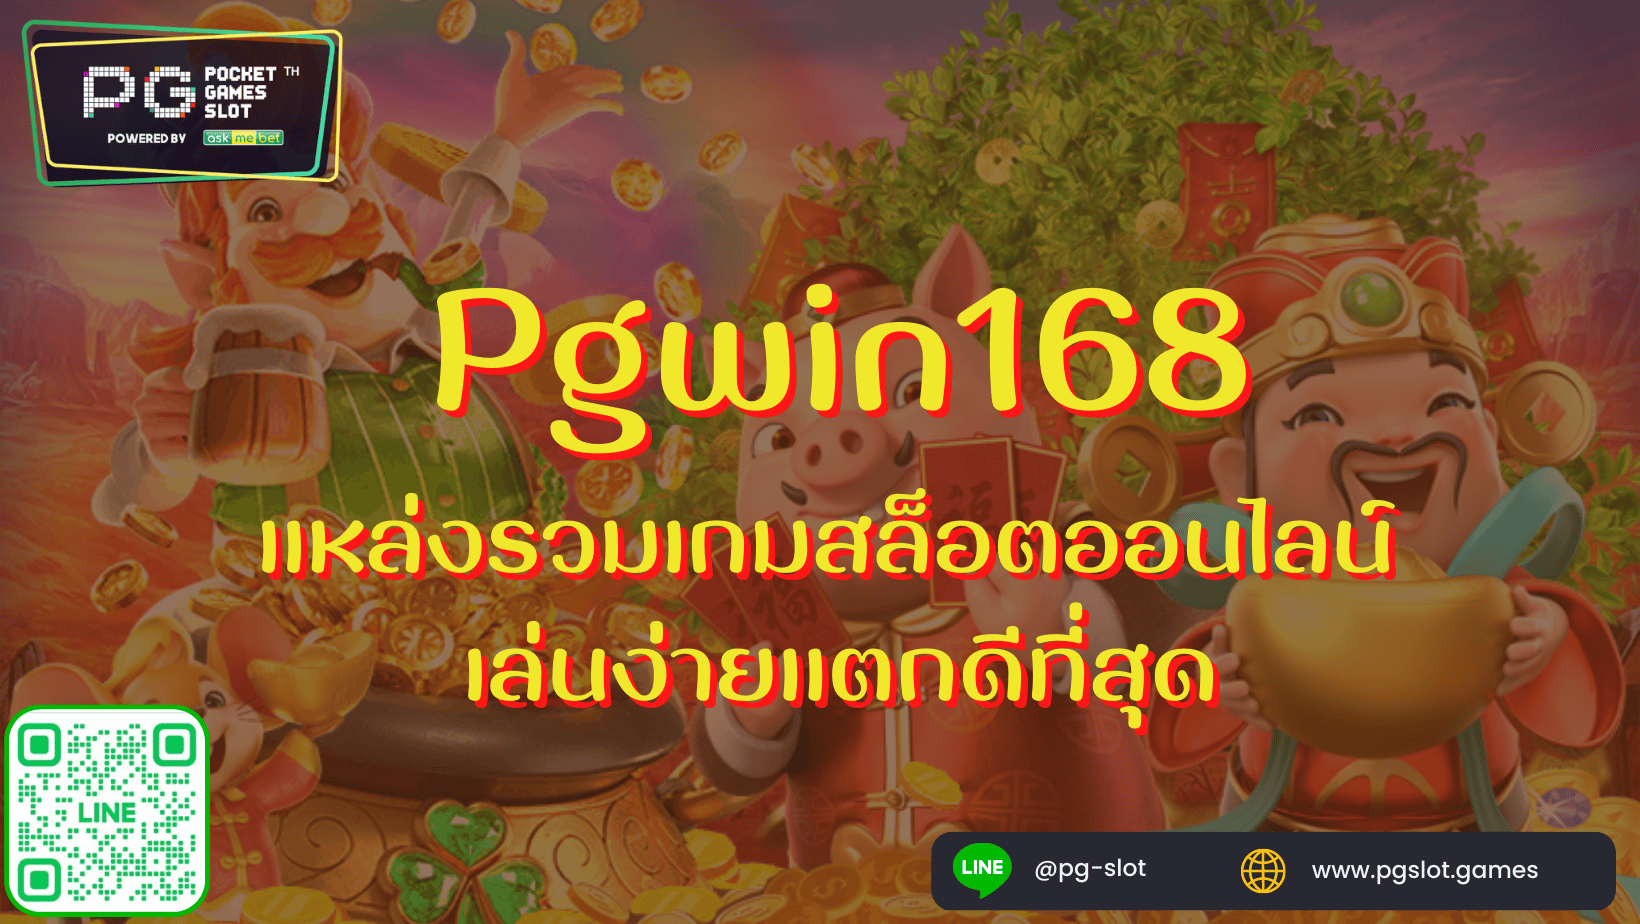 Pgwin168